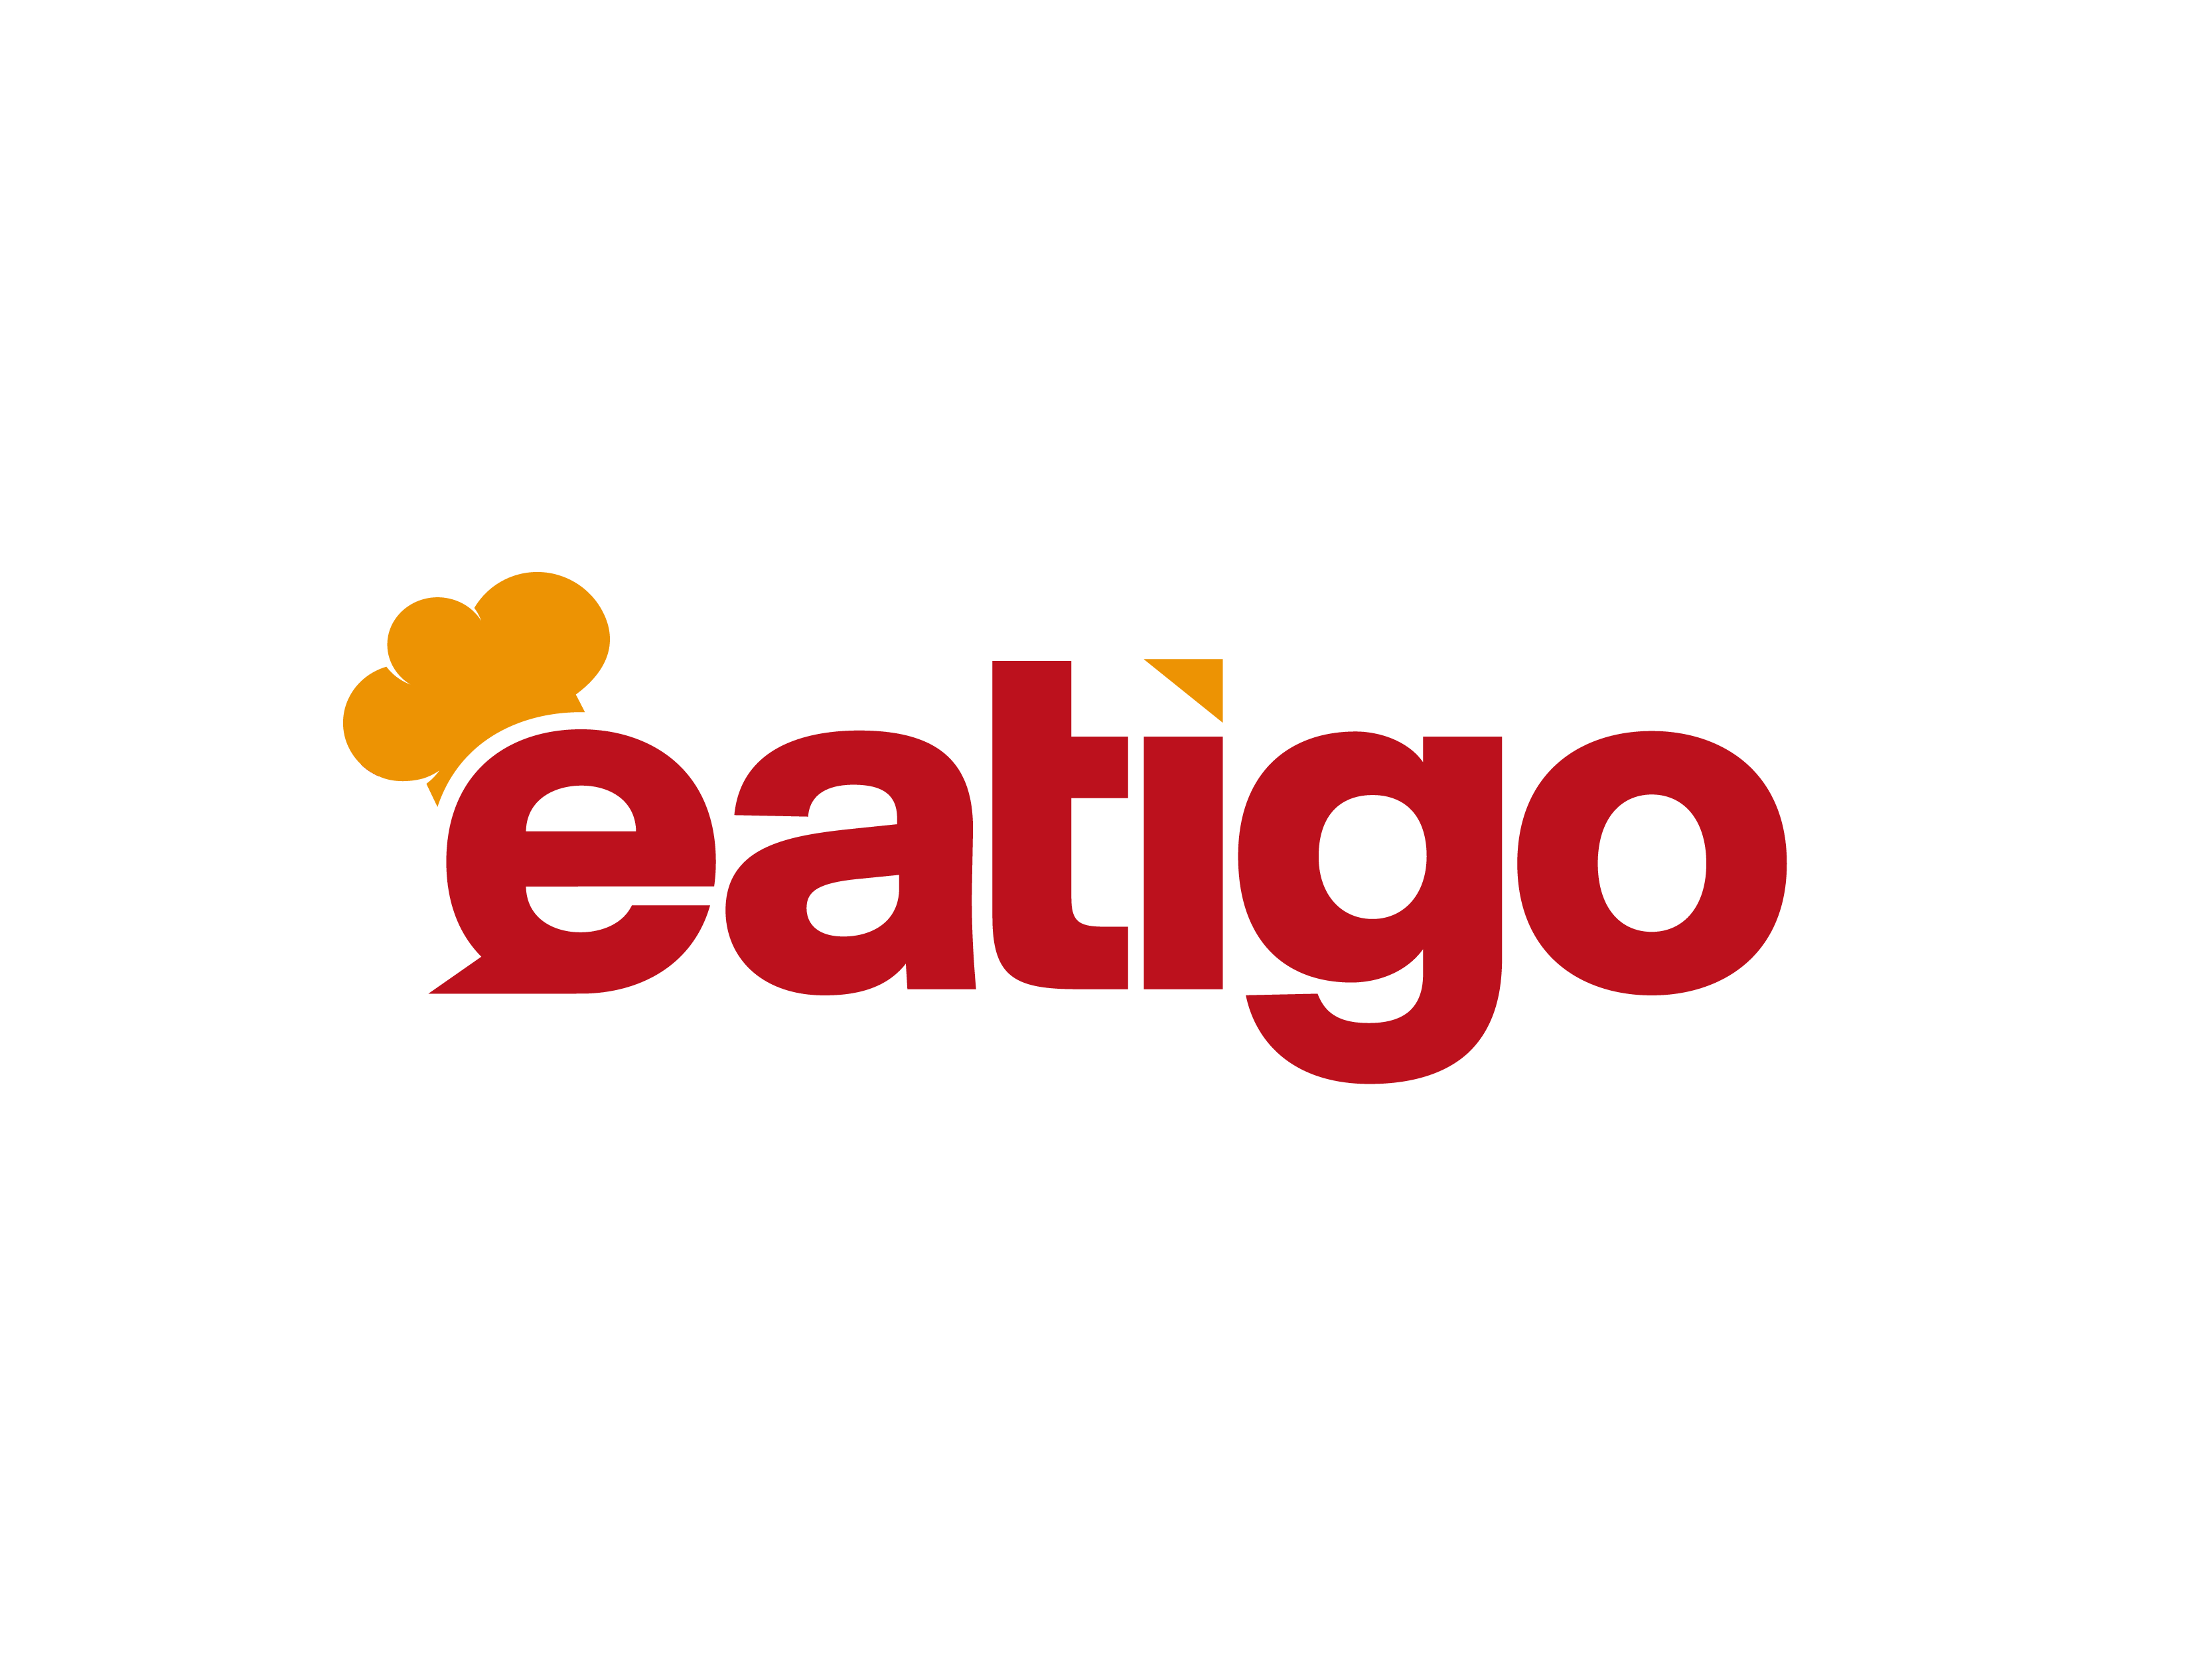  Eatigo優惠券